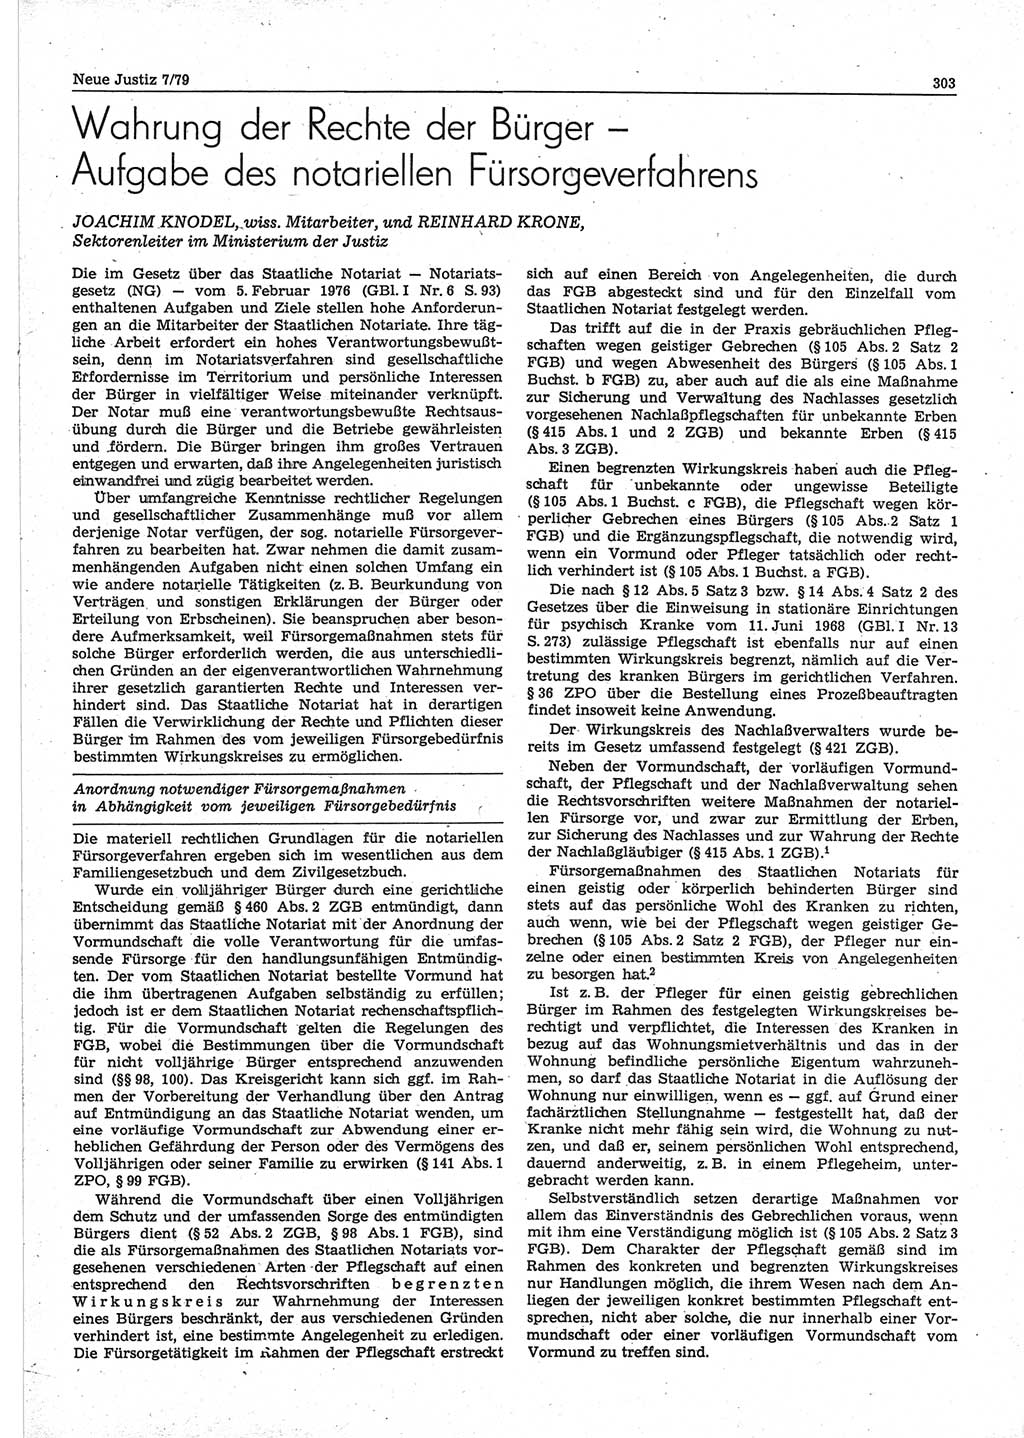 Neue Justiz (NJ), Zeitschrift für sozialistisches Recht und Gesetzlichkeit [Deutsche Demokratische Republik (DDR)], 33. Jahrgang 1979, Seite 303 (NJ DDR 1979, S. 303)